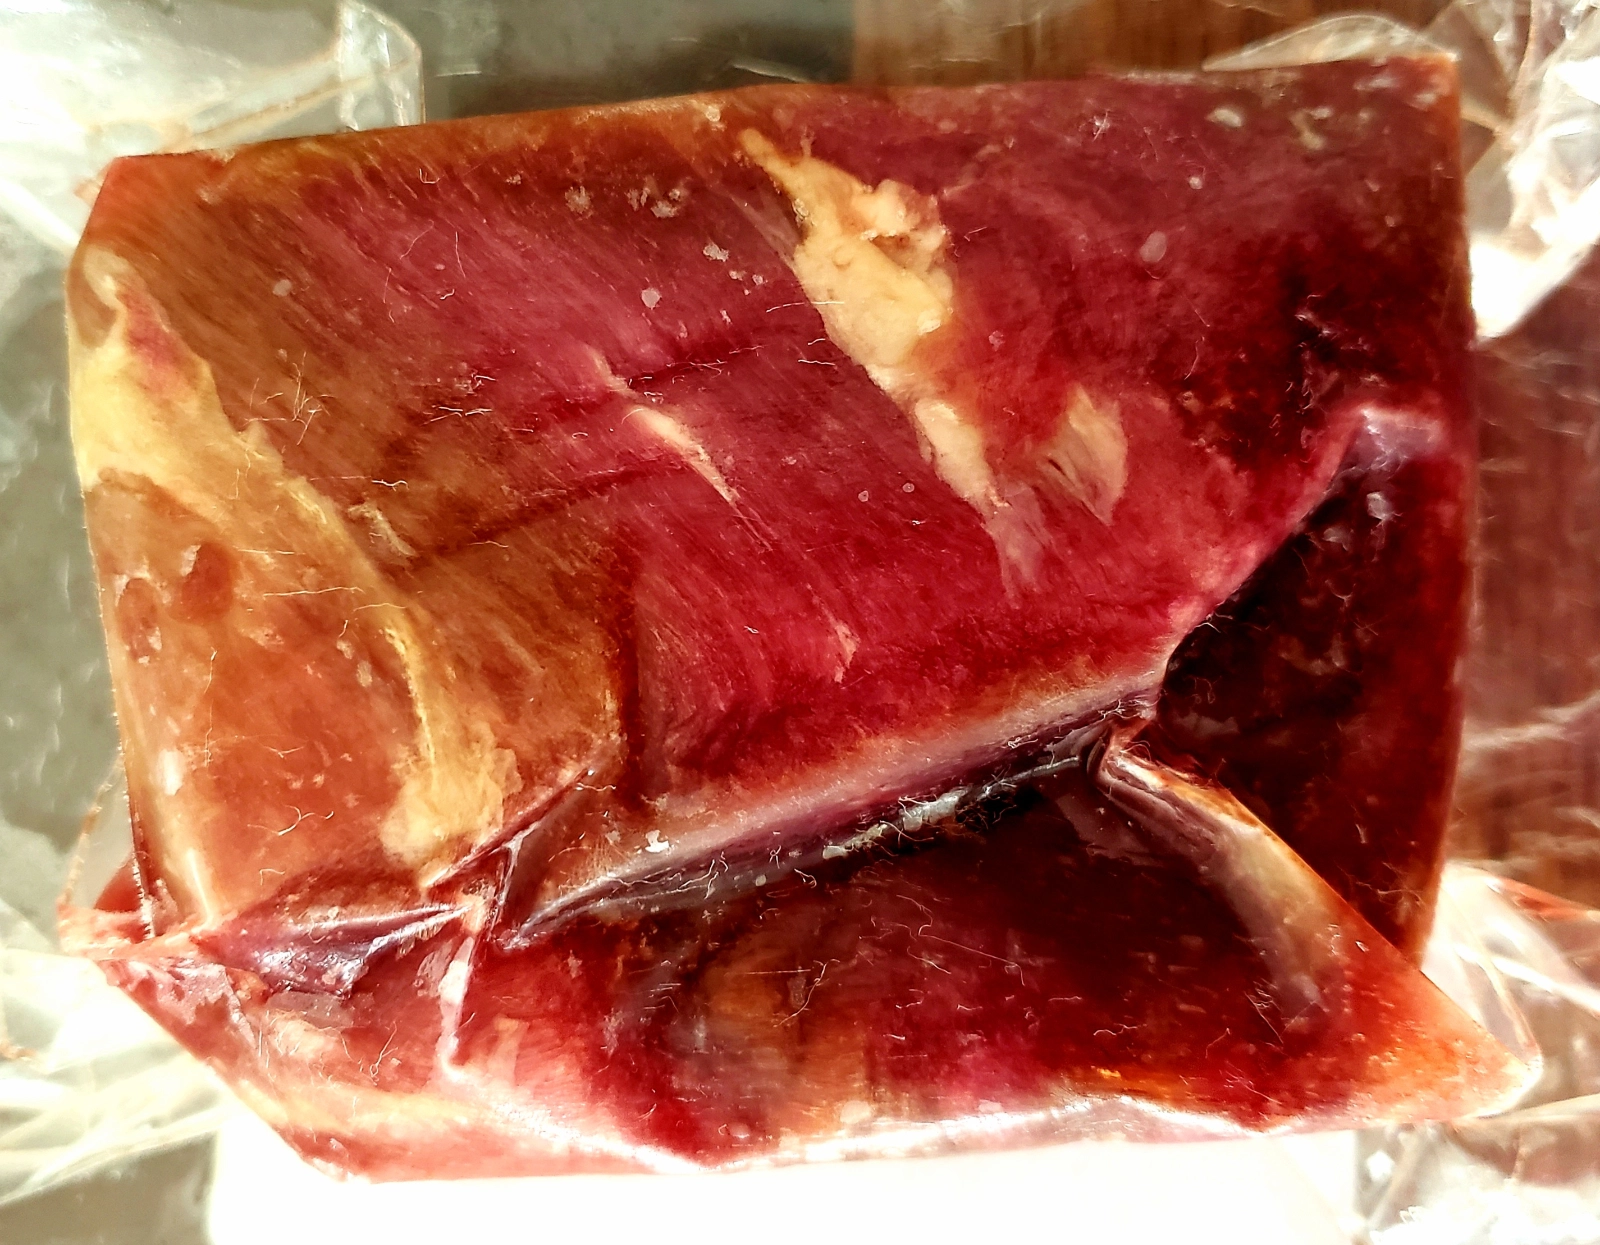 angus-beef-tenderloin-filet-mignon-steak